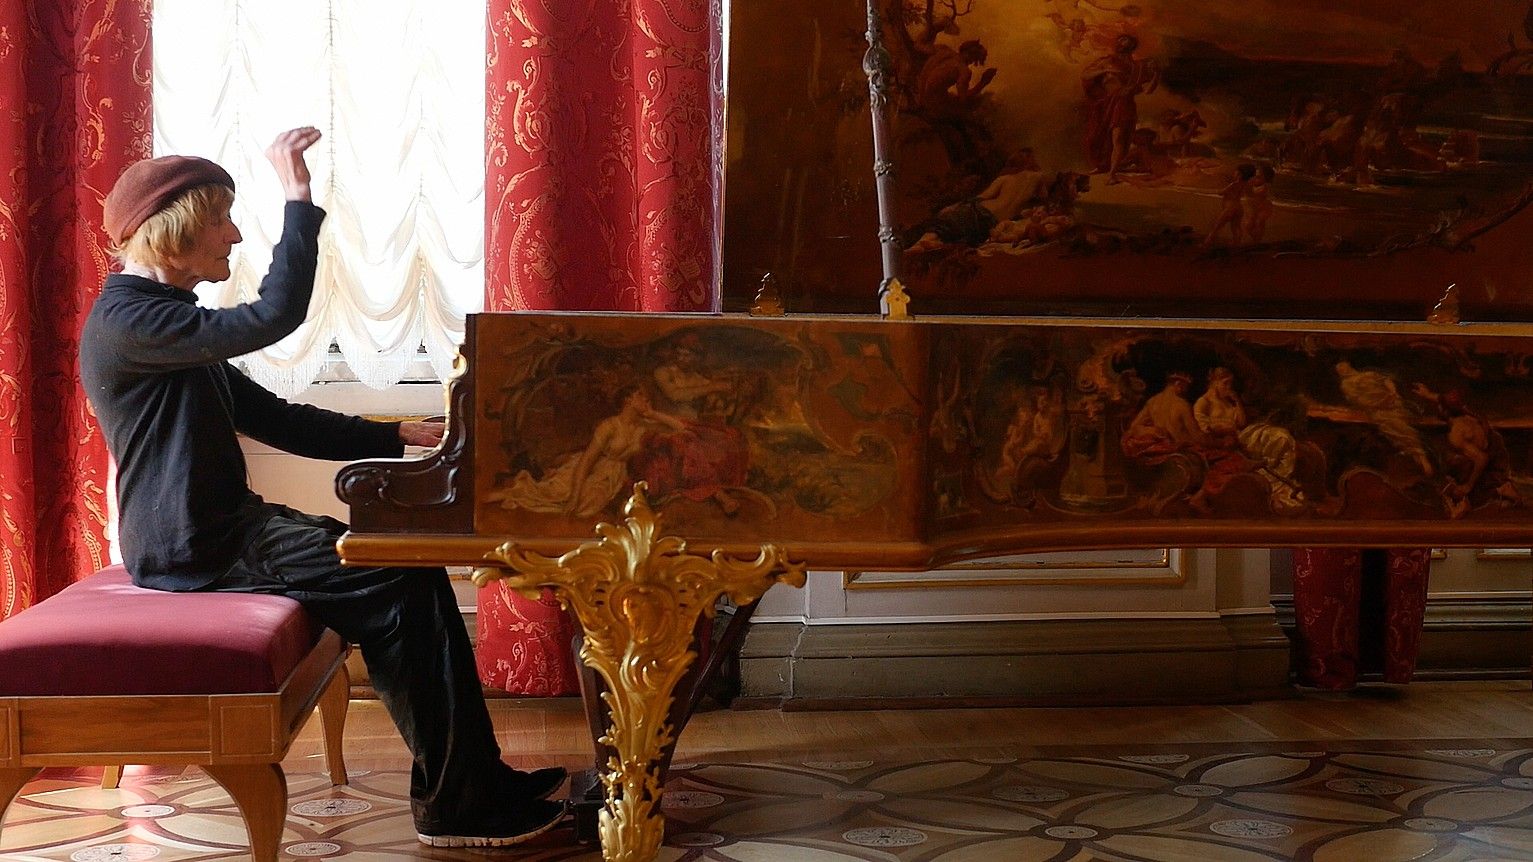 Oleg Karavaitxuk, Nikolas II.aren pianoa izandakoa jotzen, San Petersburgoko Hermitagen, Andres Duqueren filmaren fotograma batean. IKUSPUNTU JAIALDIA.